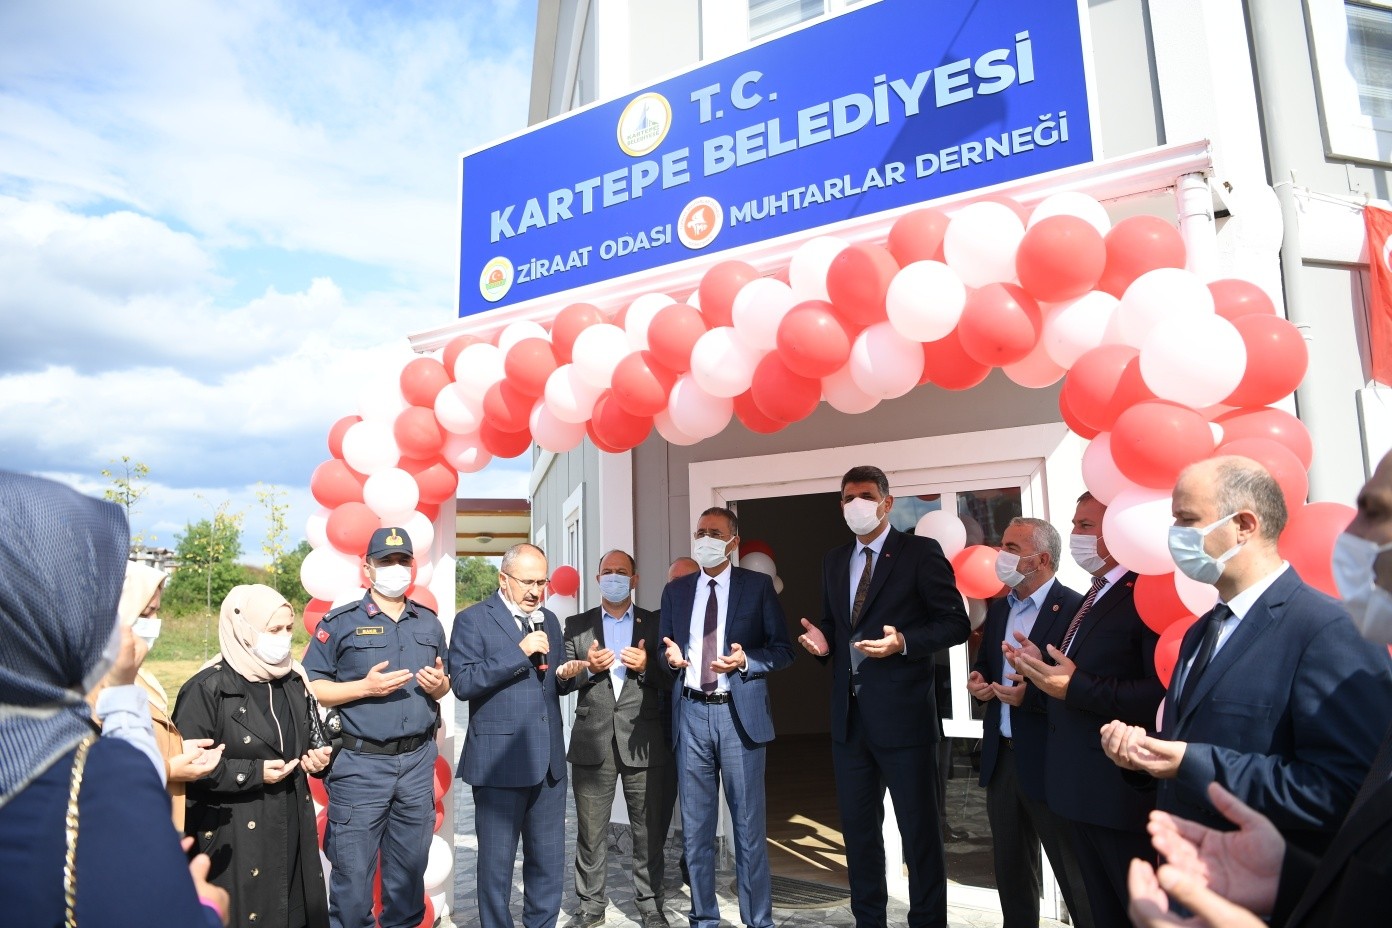 Kartepe sivil toplum merkezi hizmete açıldı #kocaeli